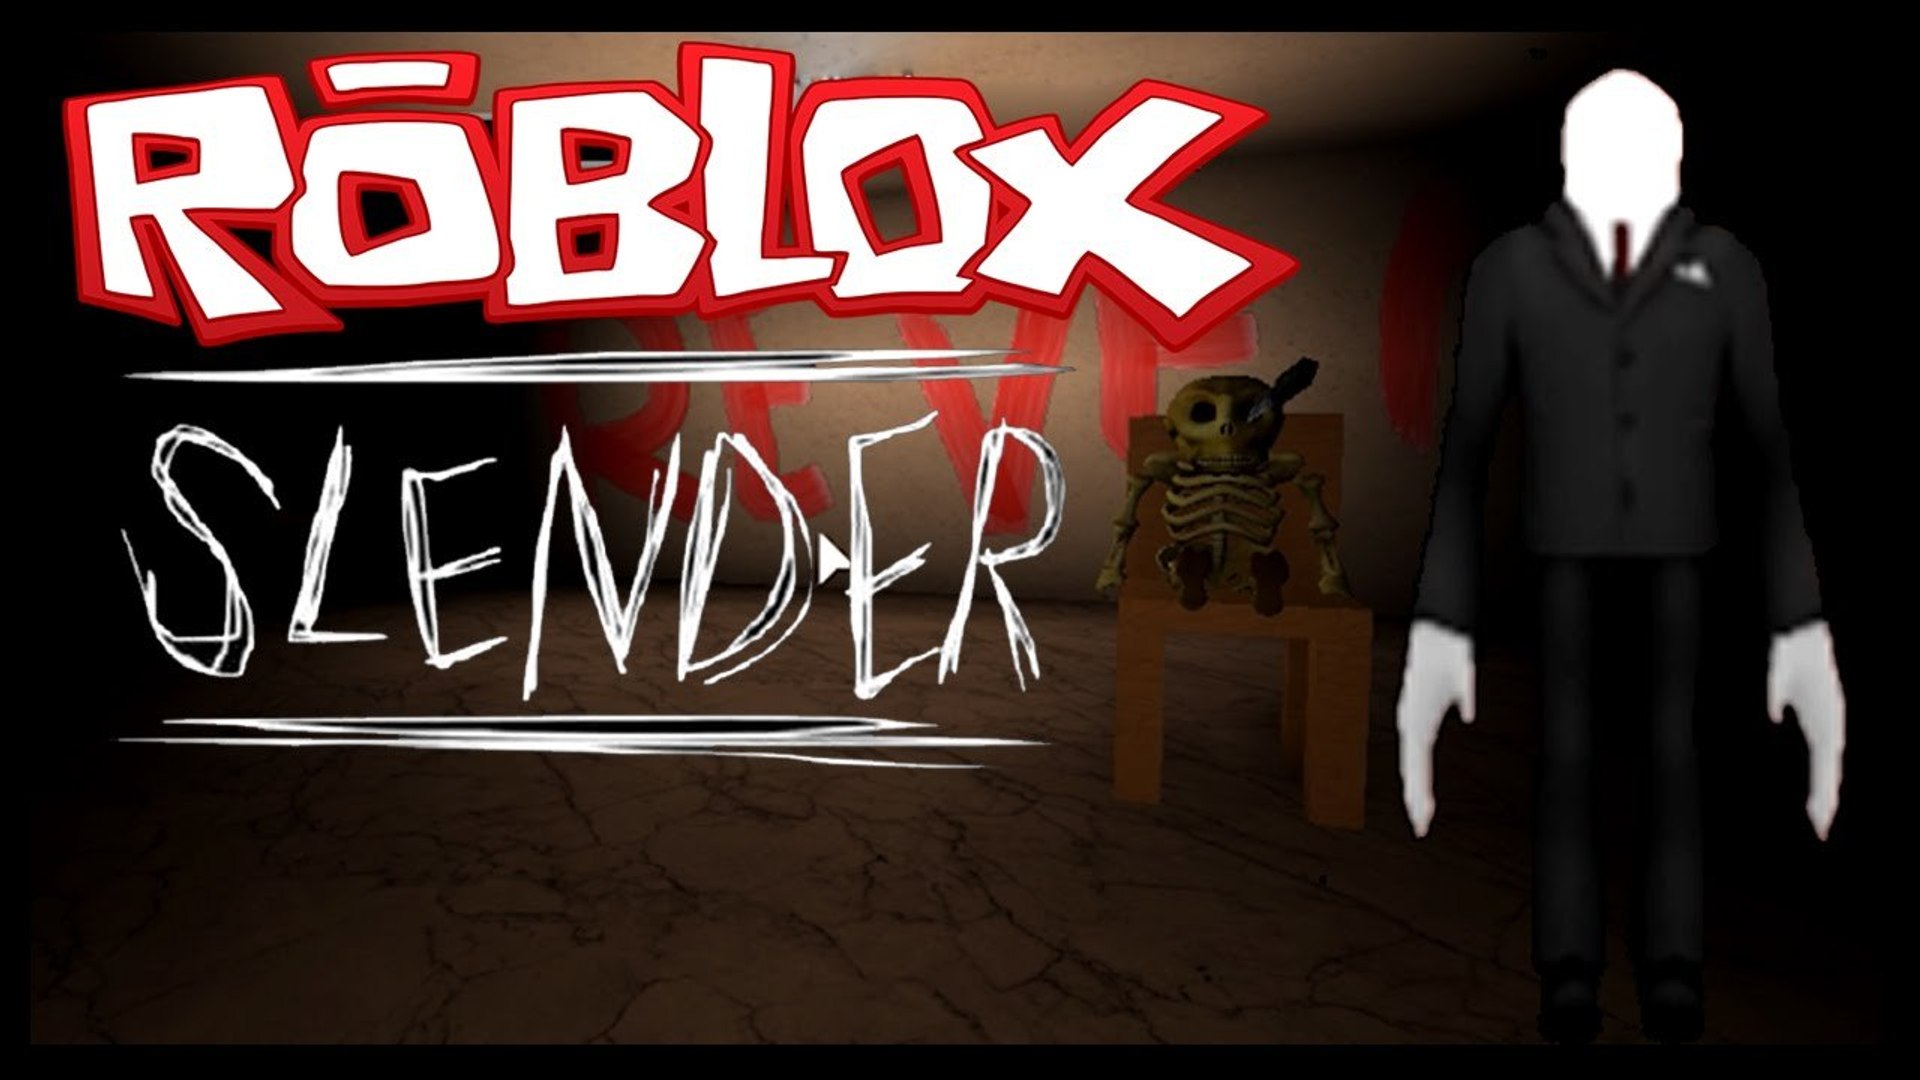 SLENDERMAN IS BACK - ROBLOX - Stop it, SLENDER 2! (Facecam